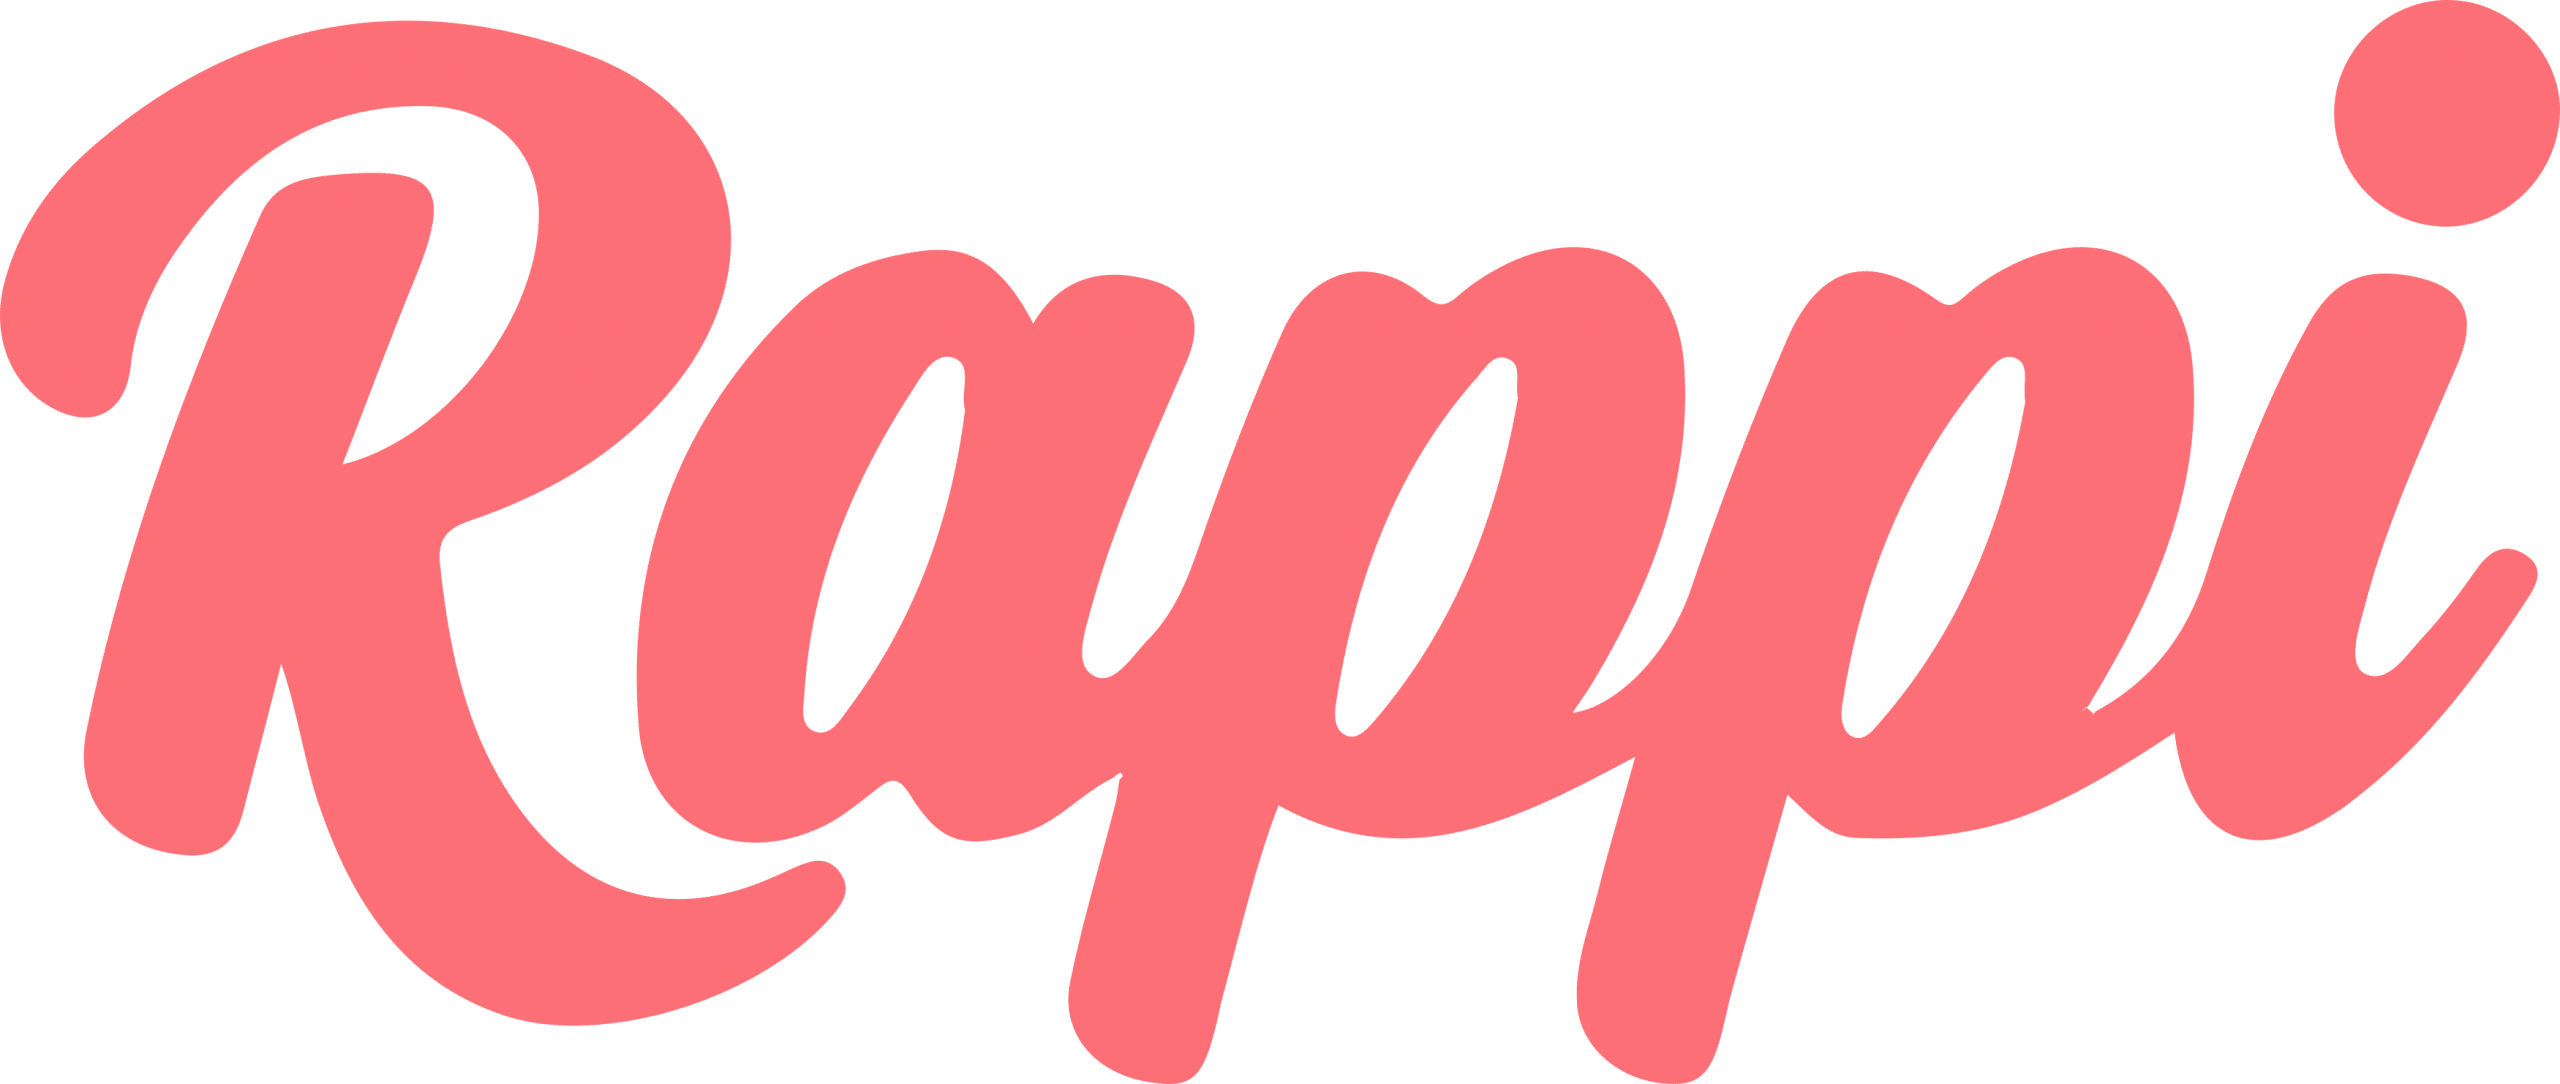 Aplicativo de entrega Rappi / Logo divulgação